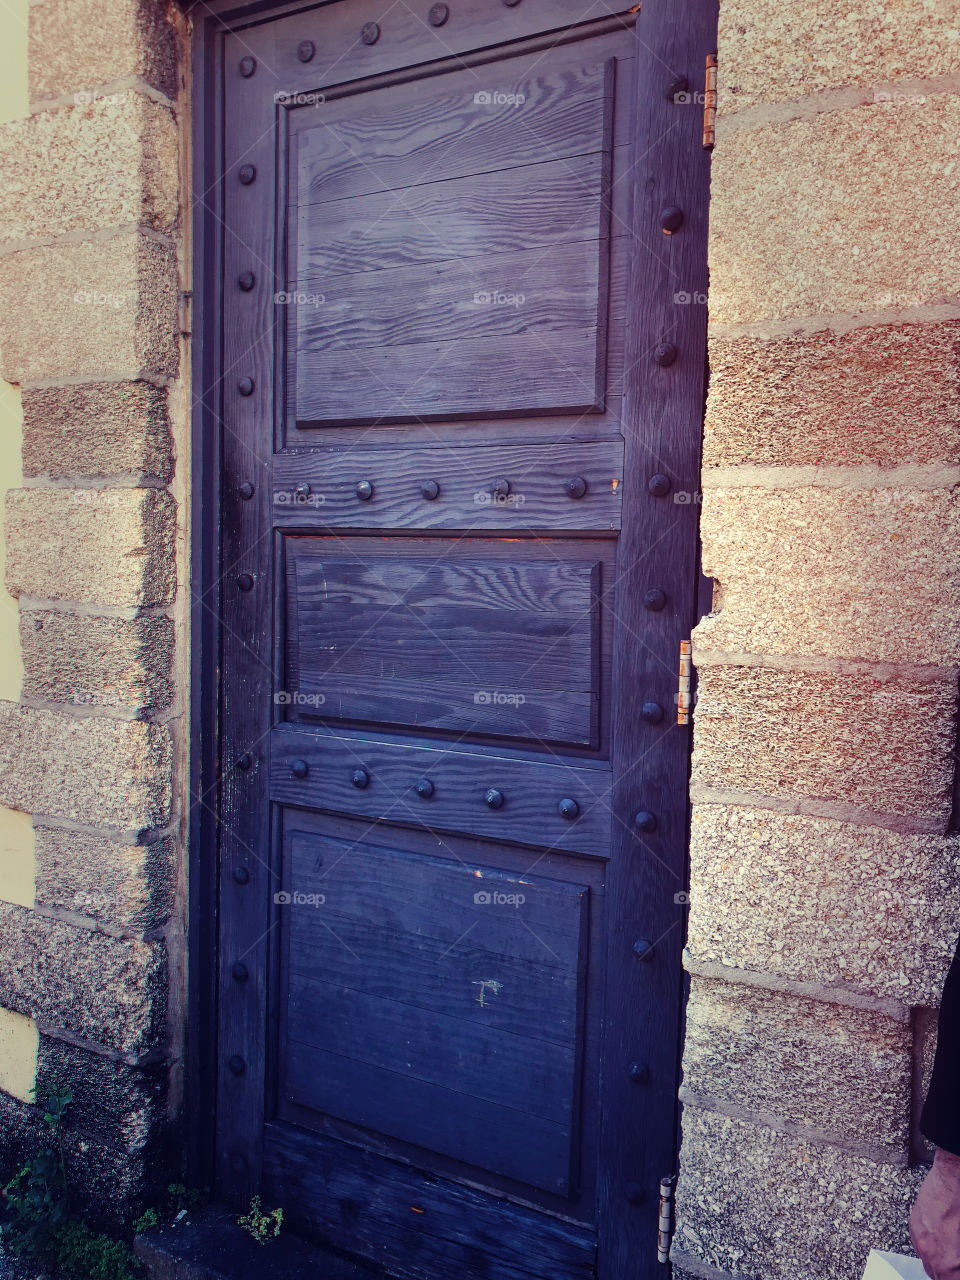 The door 